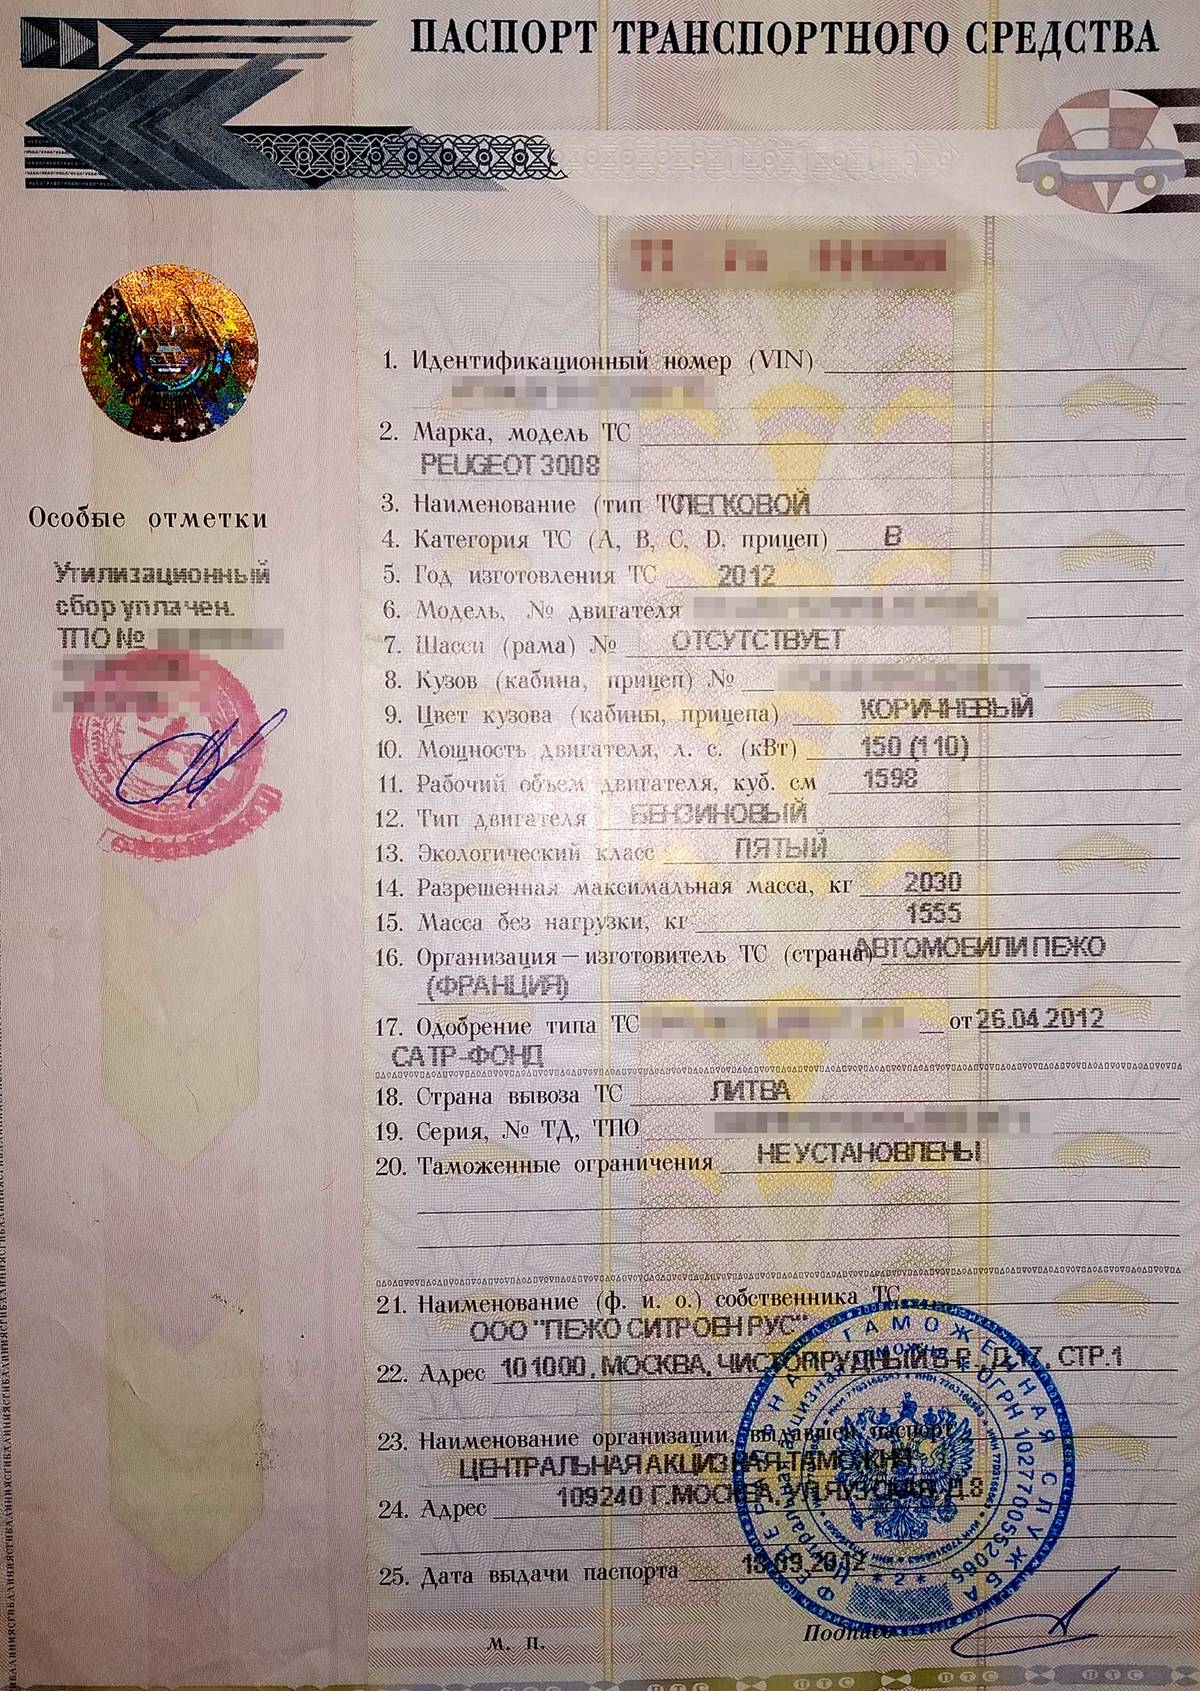 адреса регистрации транспортных средств в москве